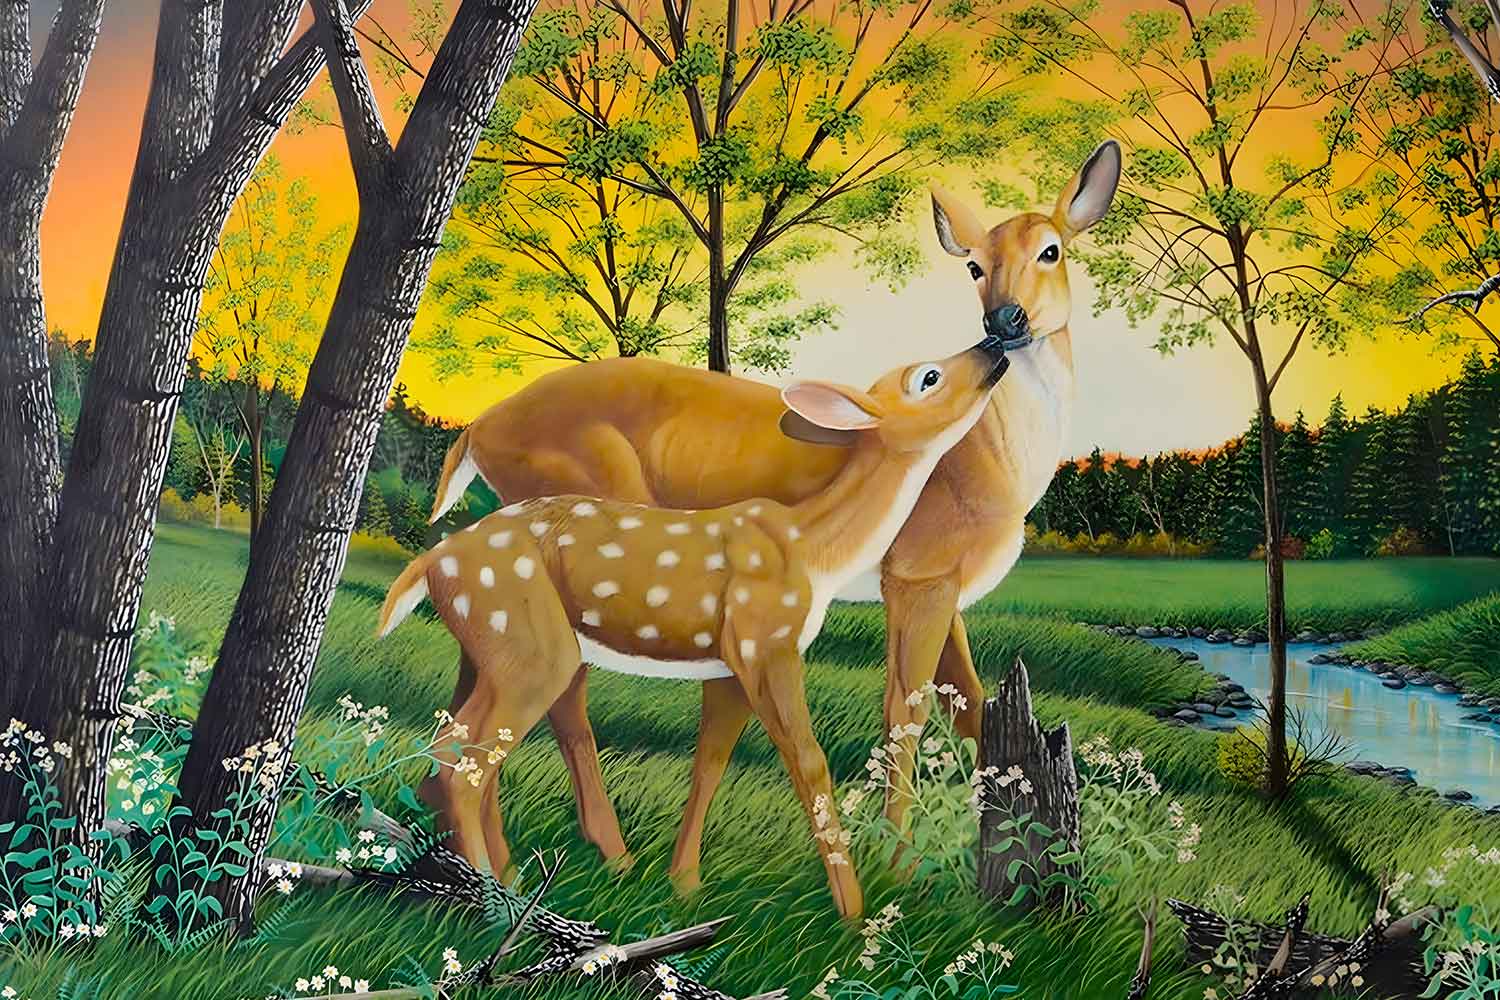 Feng Shui Deer Painting